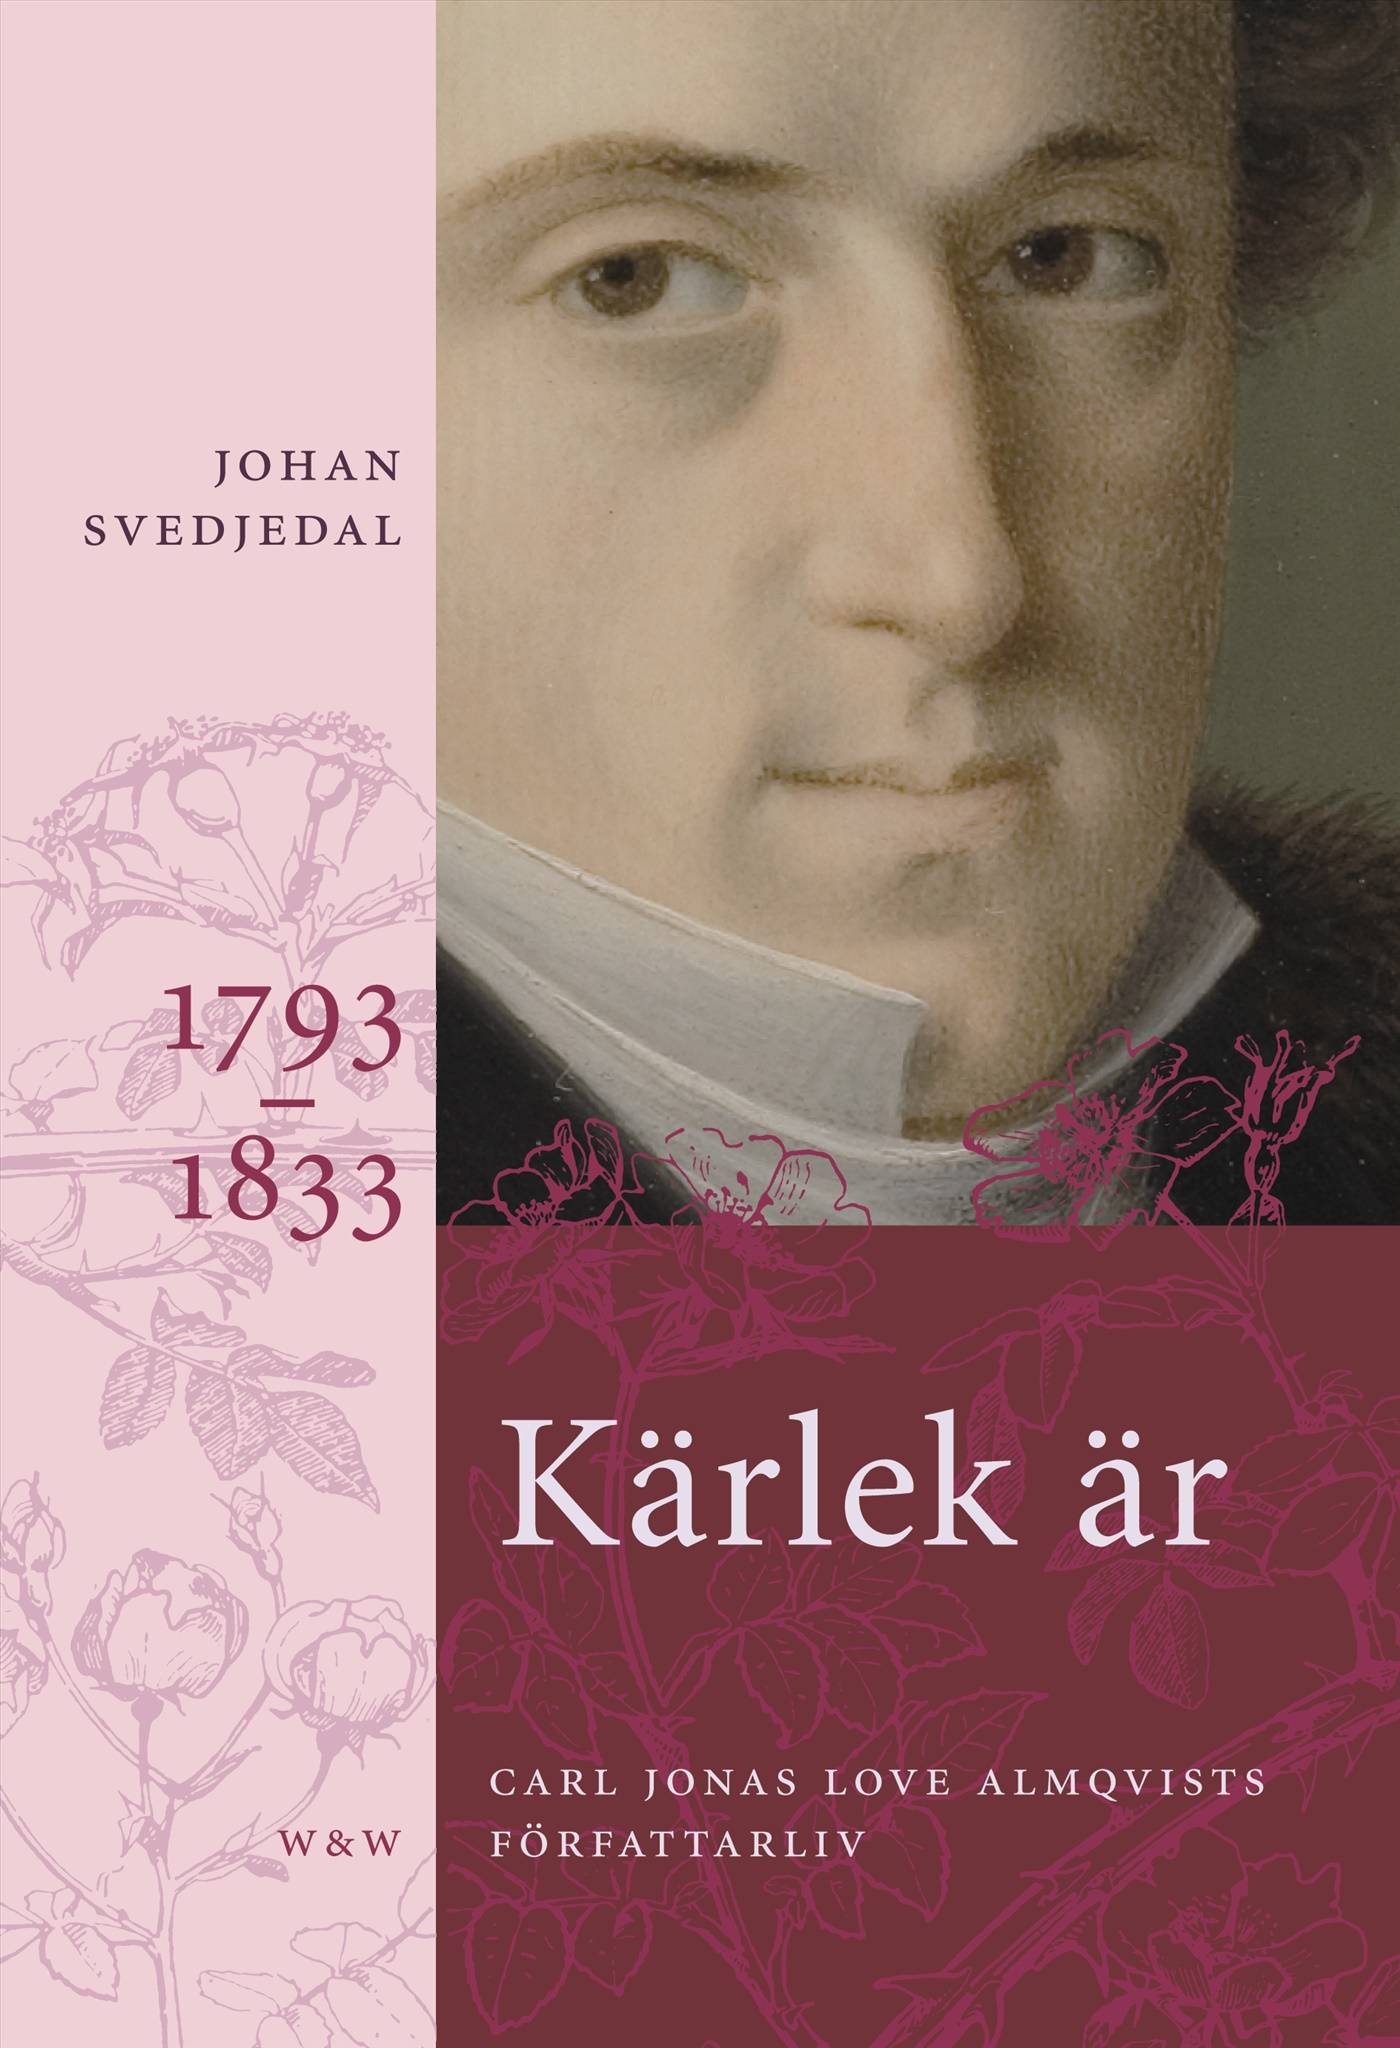 Kärlek är; Rosor, törnen; Frihetens rena sak: Carl Jonas Love Almqvists författarliv 1793-1866